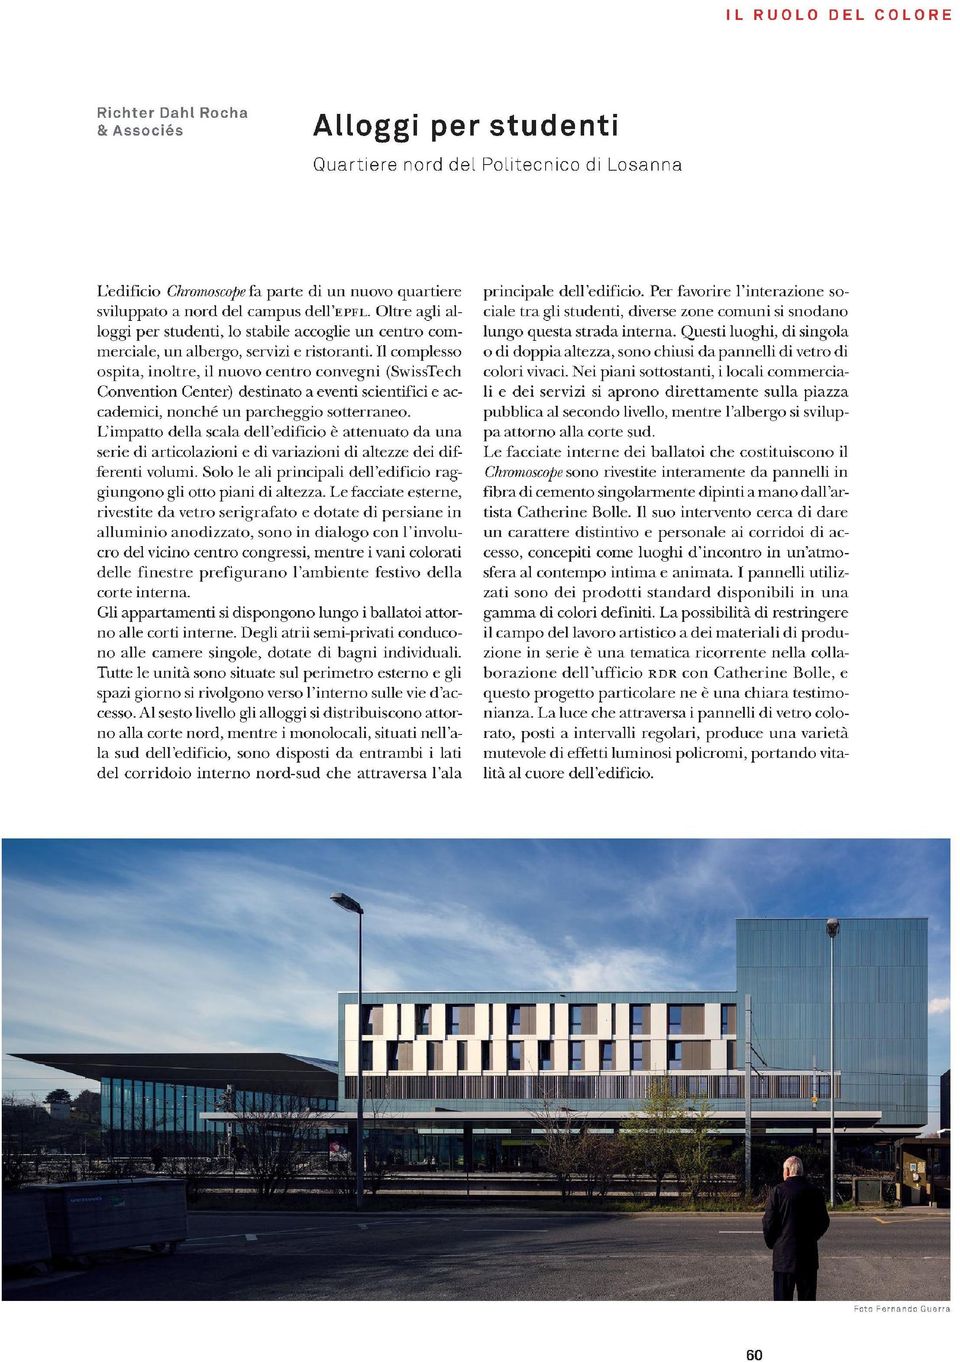 II complesso ospita, inoltre, il nuovo centro convegni (SwissTech Convention Center) destinato a eventi scientifici e accademici, nonche un parcheggio sotterraneo.